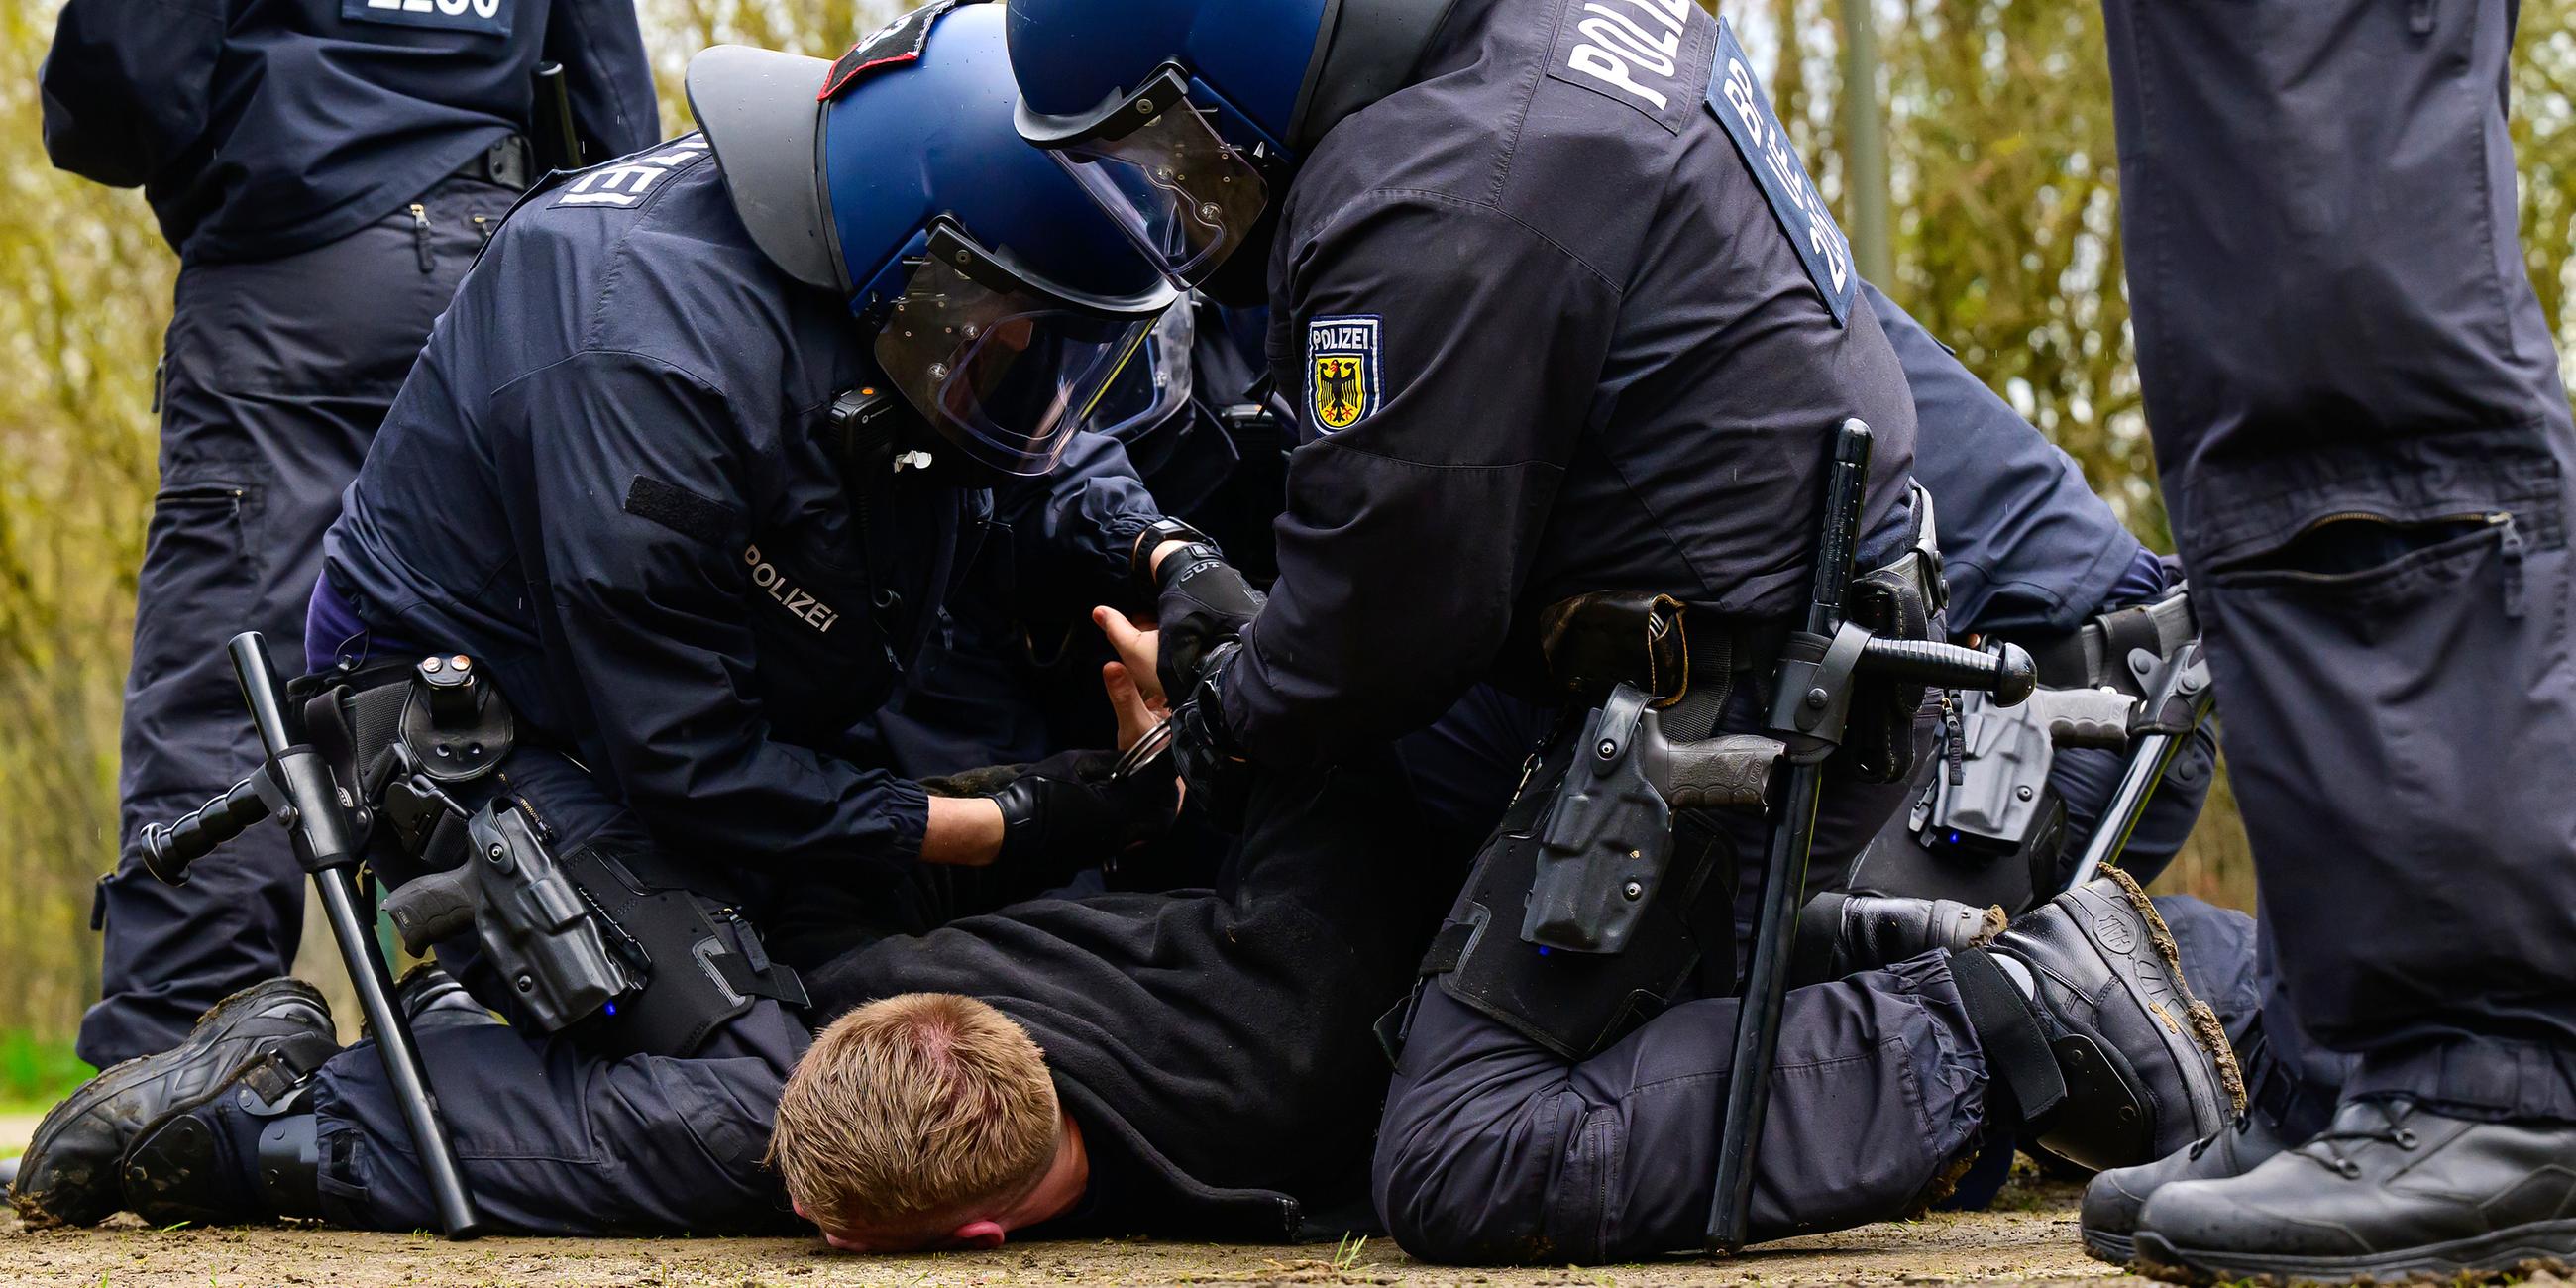 Polizisten der Bundespolizei nehmen während einer Übung einen Fußballfan fest, aufgenommen am 30.03.2023 in Uelzen